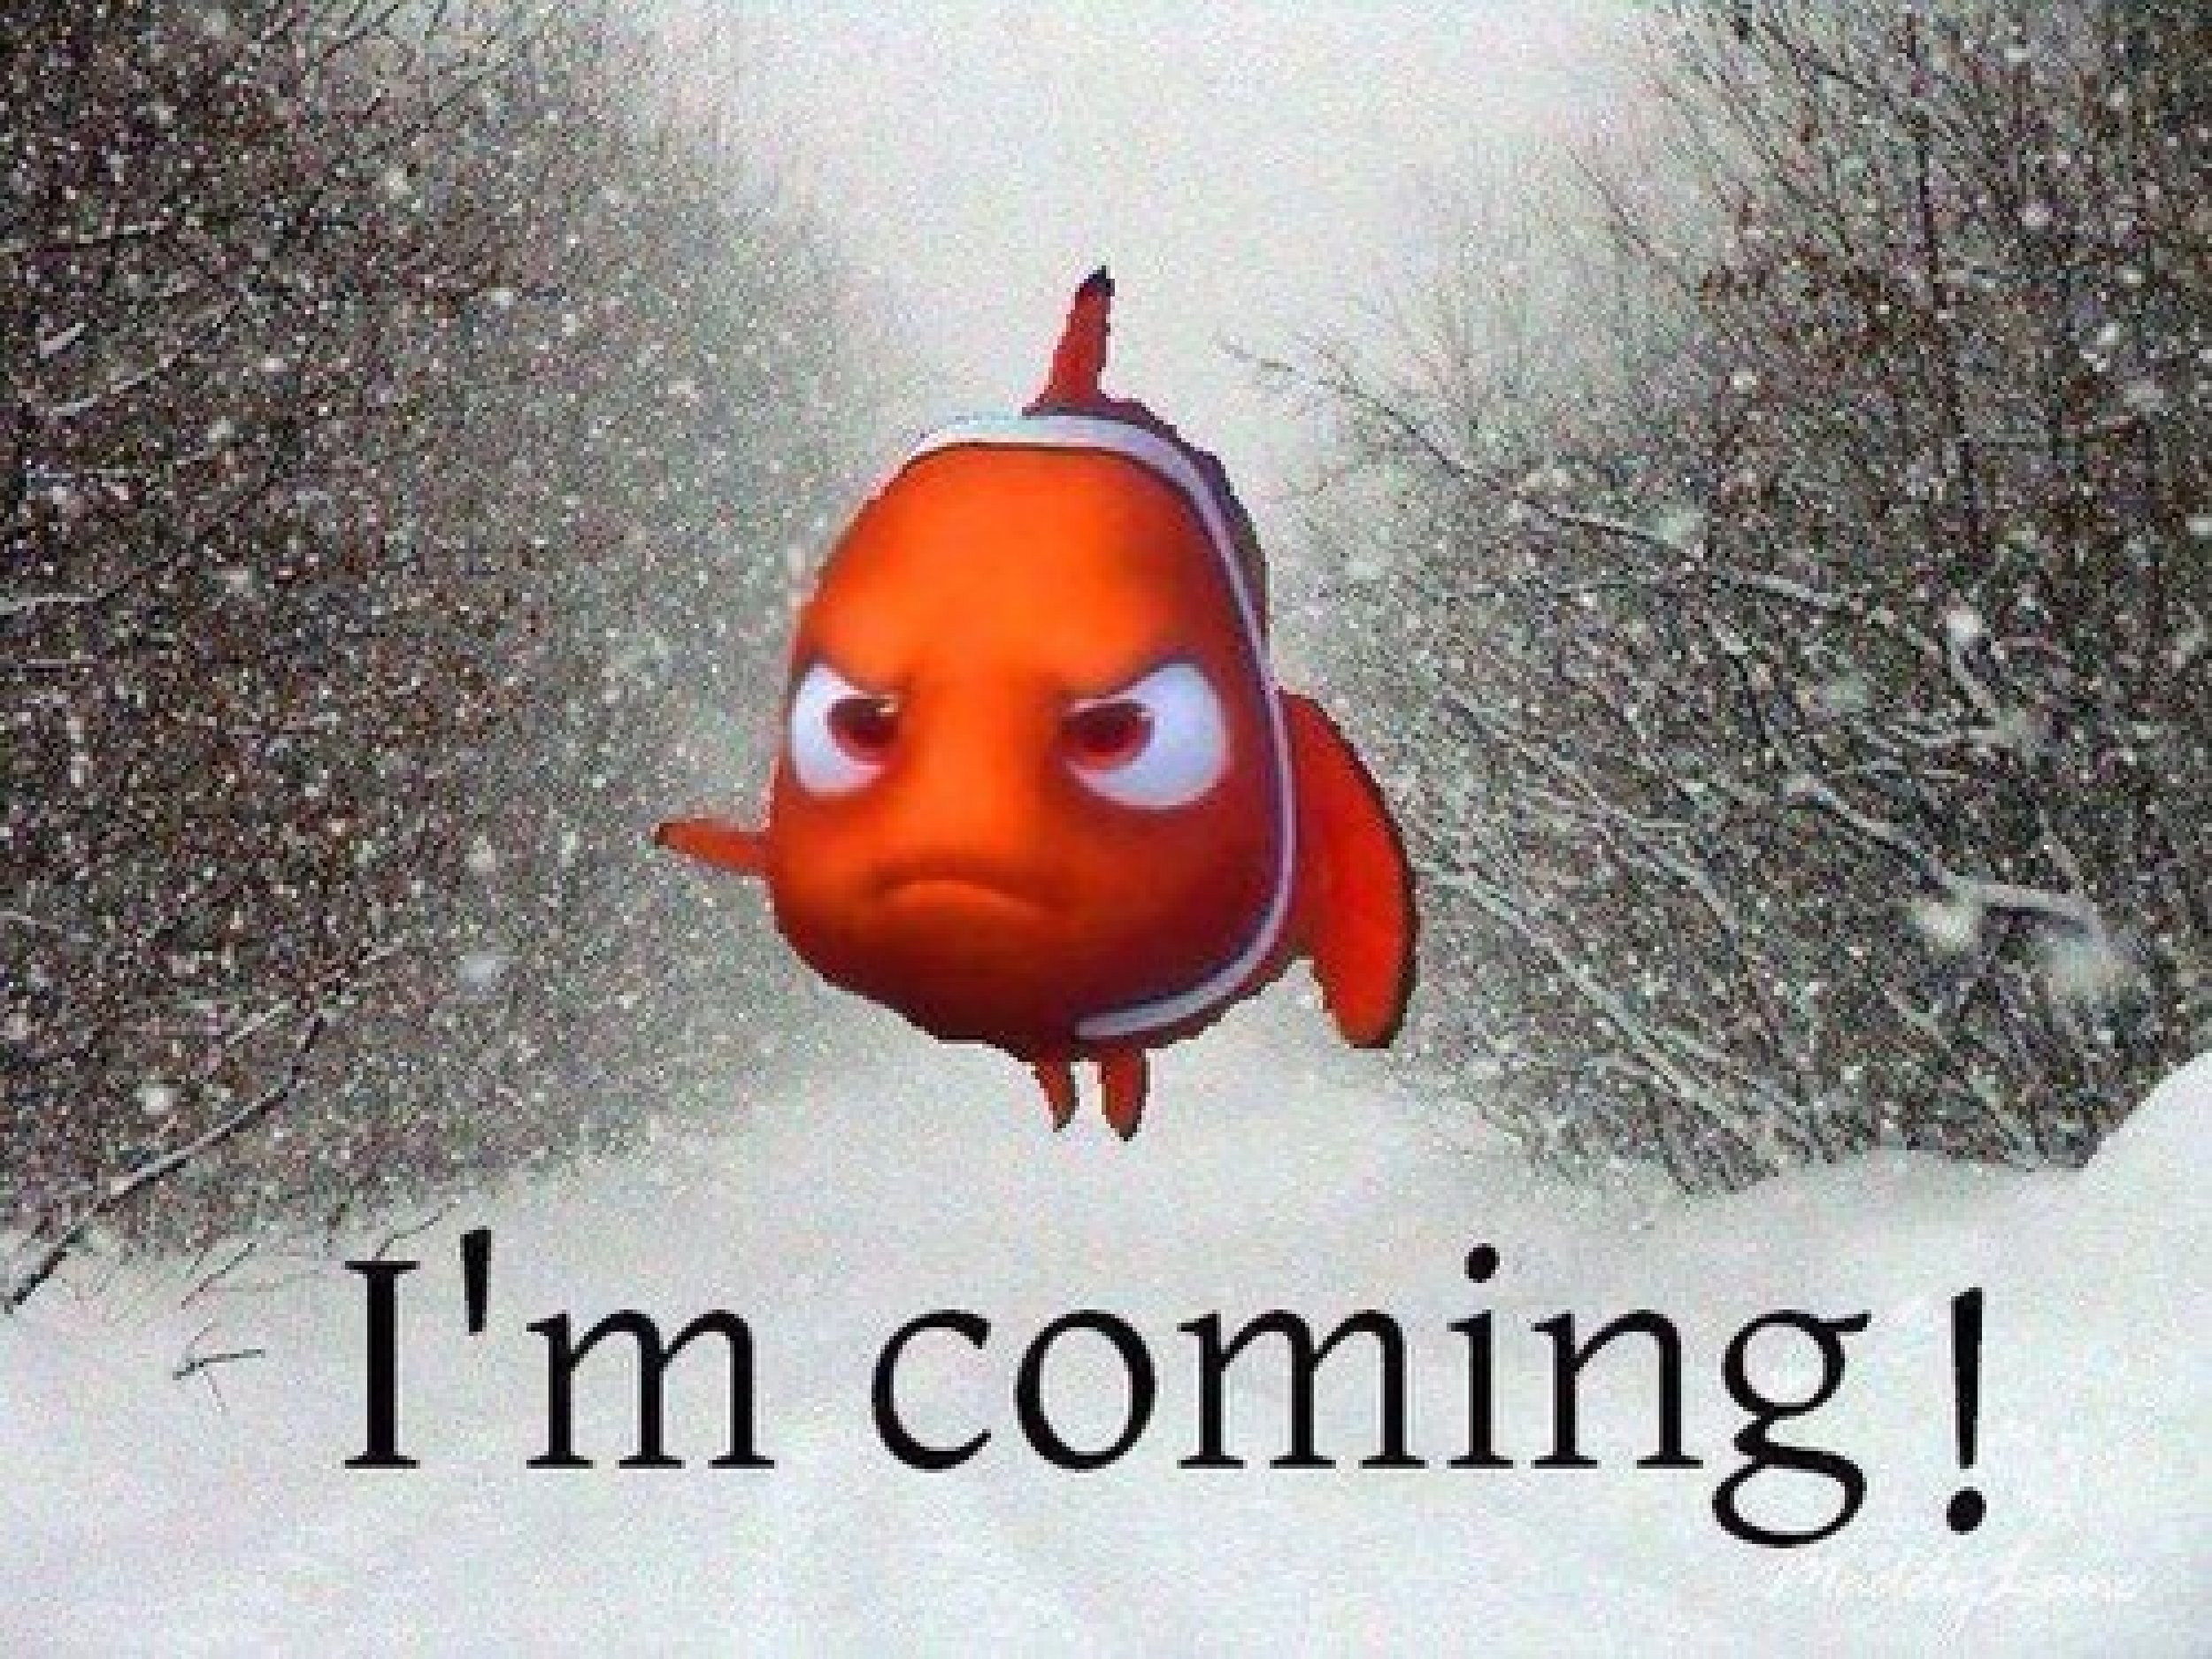 Winter Storm Nemo